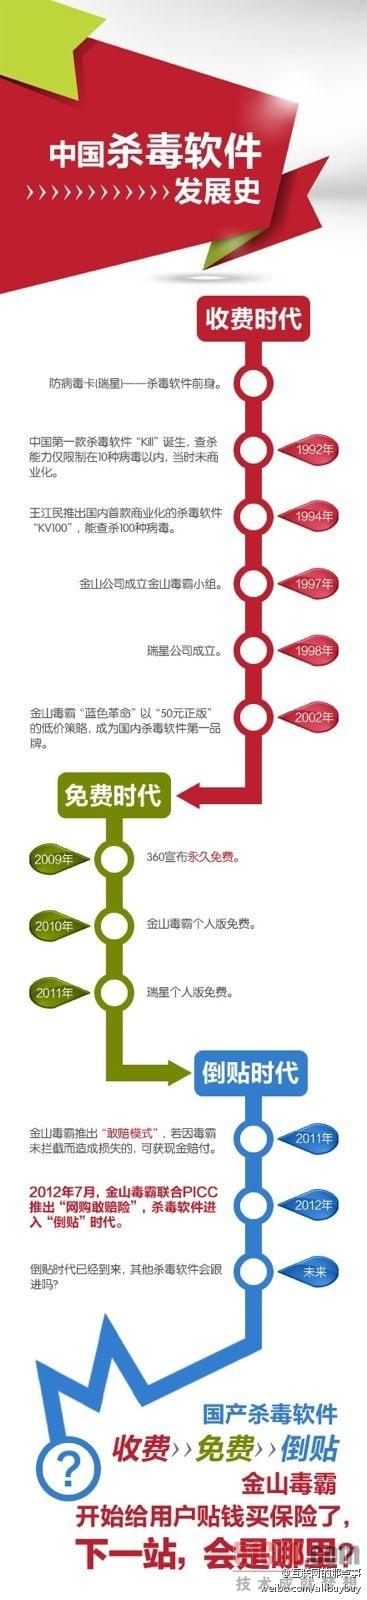 中国杀毒软件进入倒贴时代（信息图）